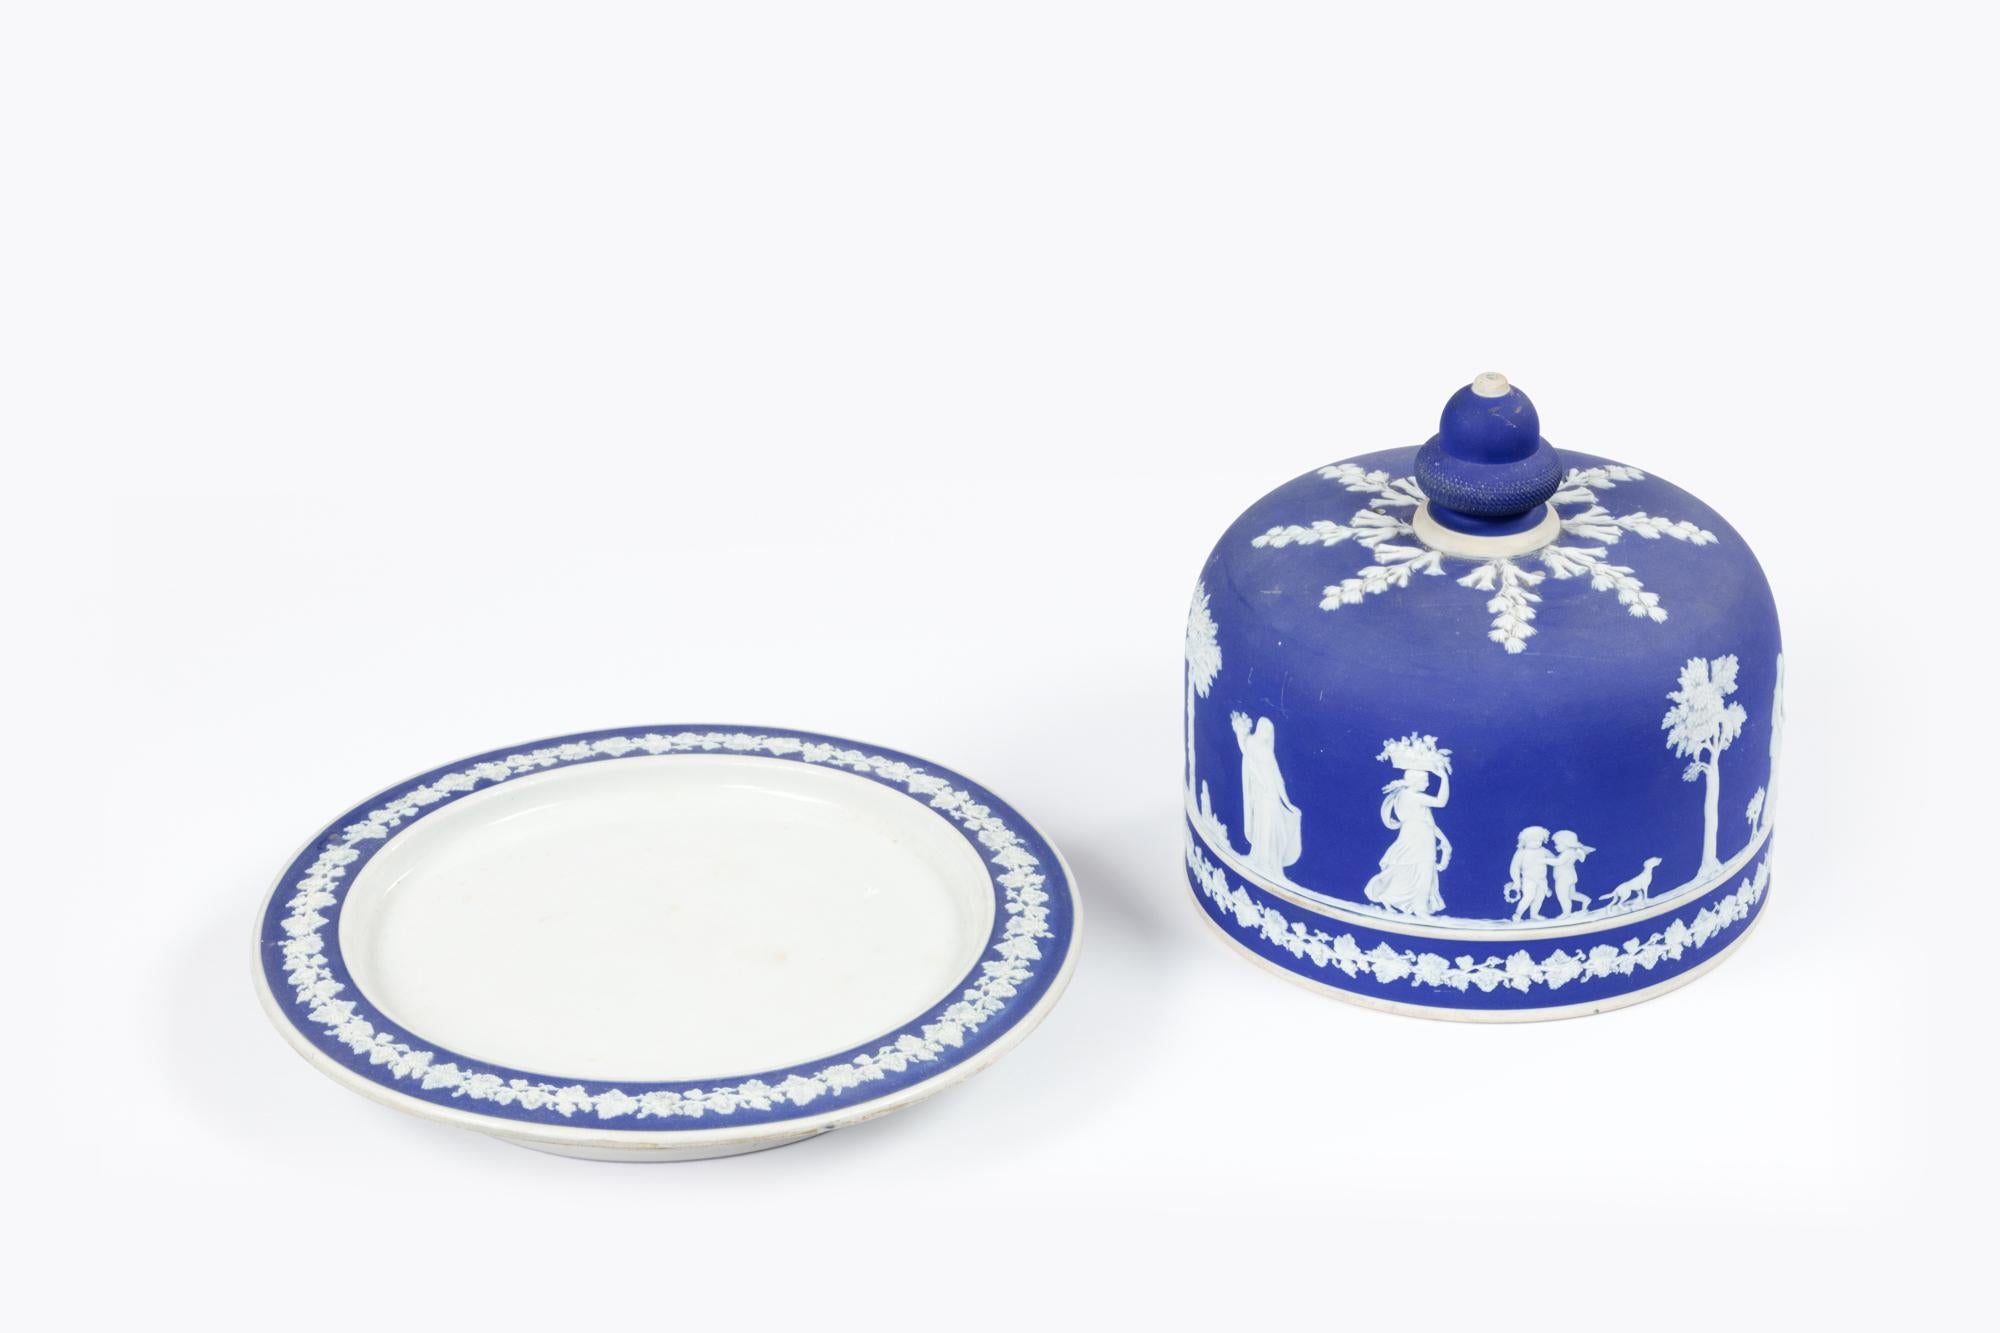 Schwere kobaltblaue Wedgewood Käseplatte aus Jasperware mit Kuppel.

Das aufgetragene weiße Flachrelief zeigt klassische figürliche Szenen mit Blattmotiven auf dem charakteristischen 